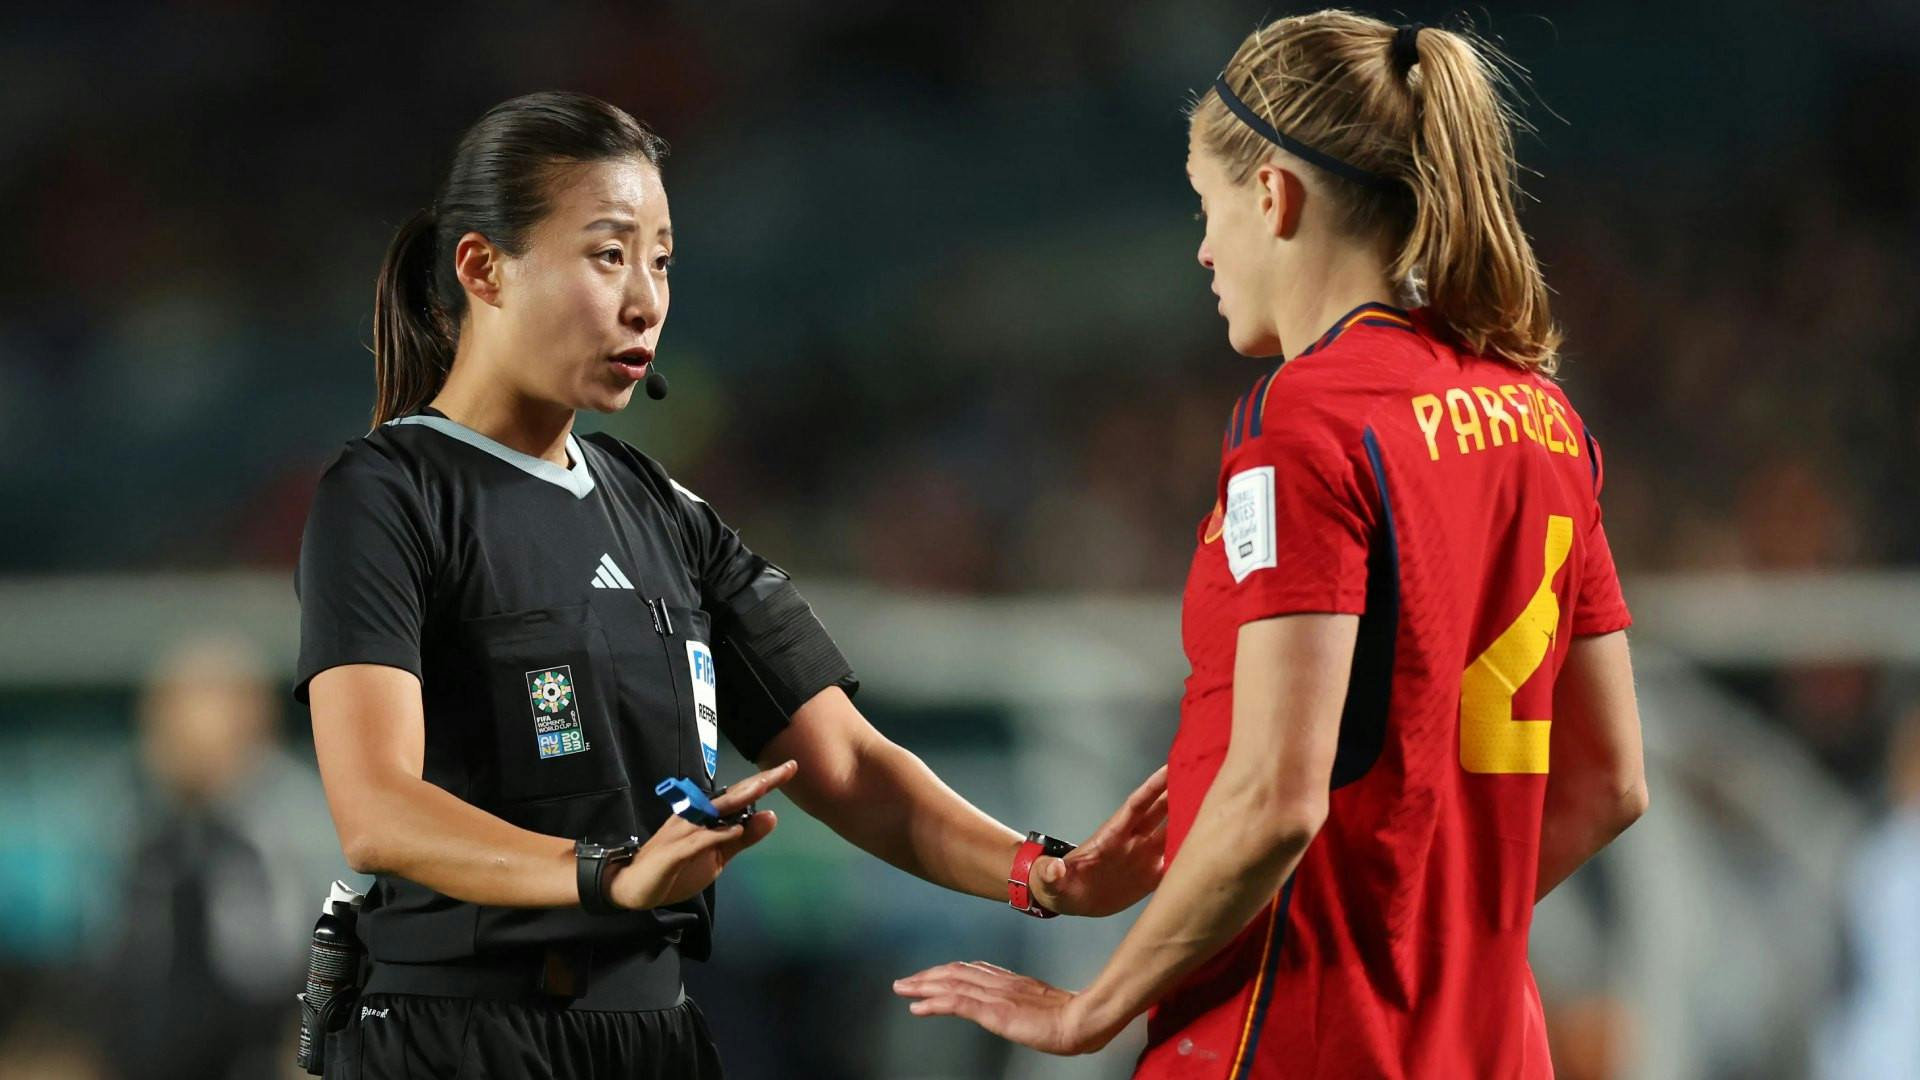 Mondiali Femminili, errore arbitrale mai visto nel calcio (VIDEO)